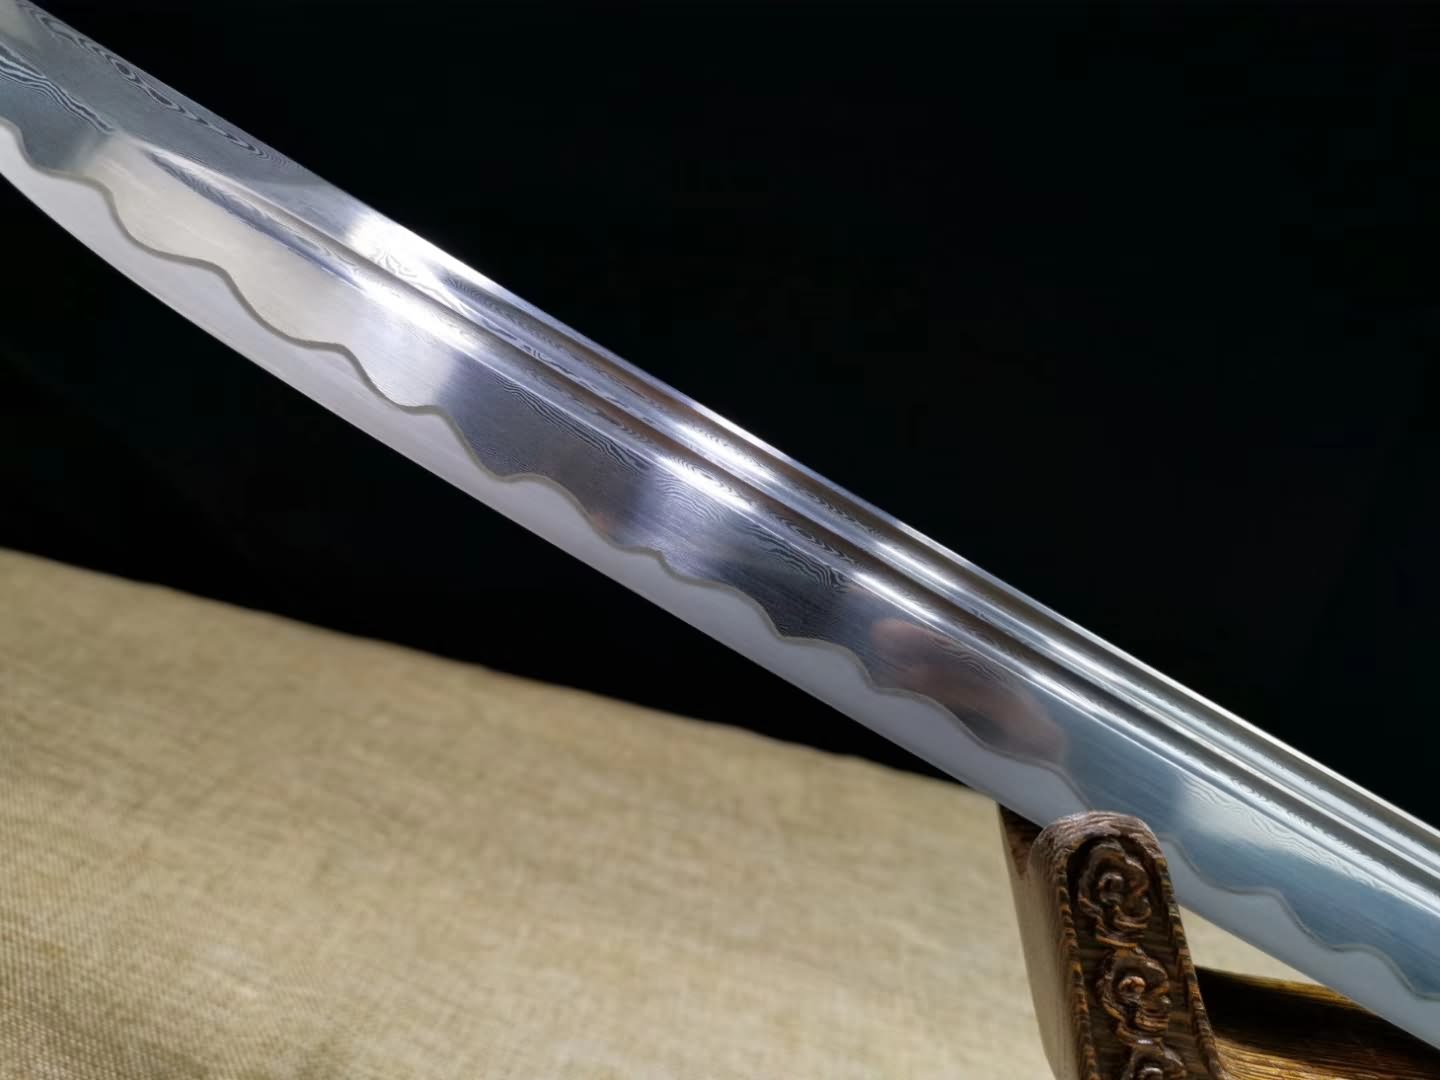 Brass scabbard,Qing dao,Handmade Damascus steel blade&handmade art - Chinese sword shop